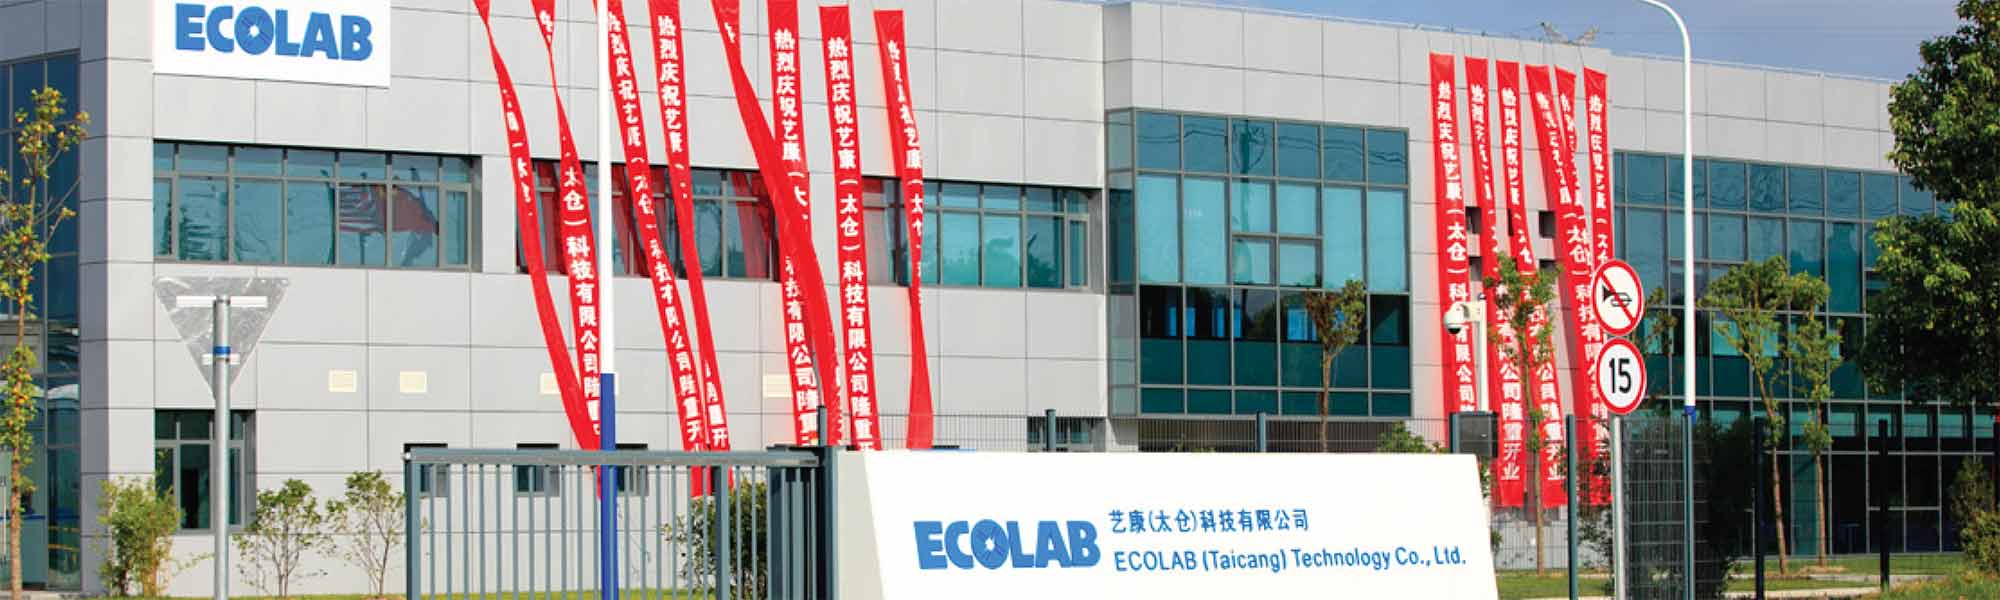 Fabryka Ecolab w Taicang w Chinach uzyskała certyfikat zarządzania zasobami wodnymi